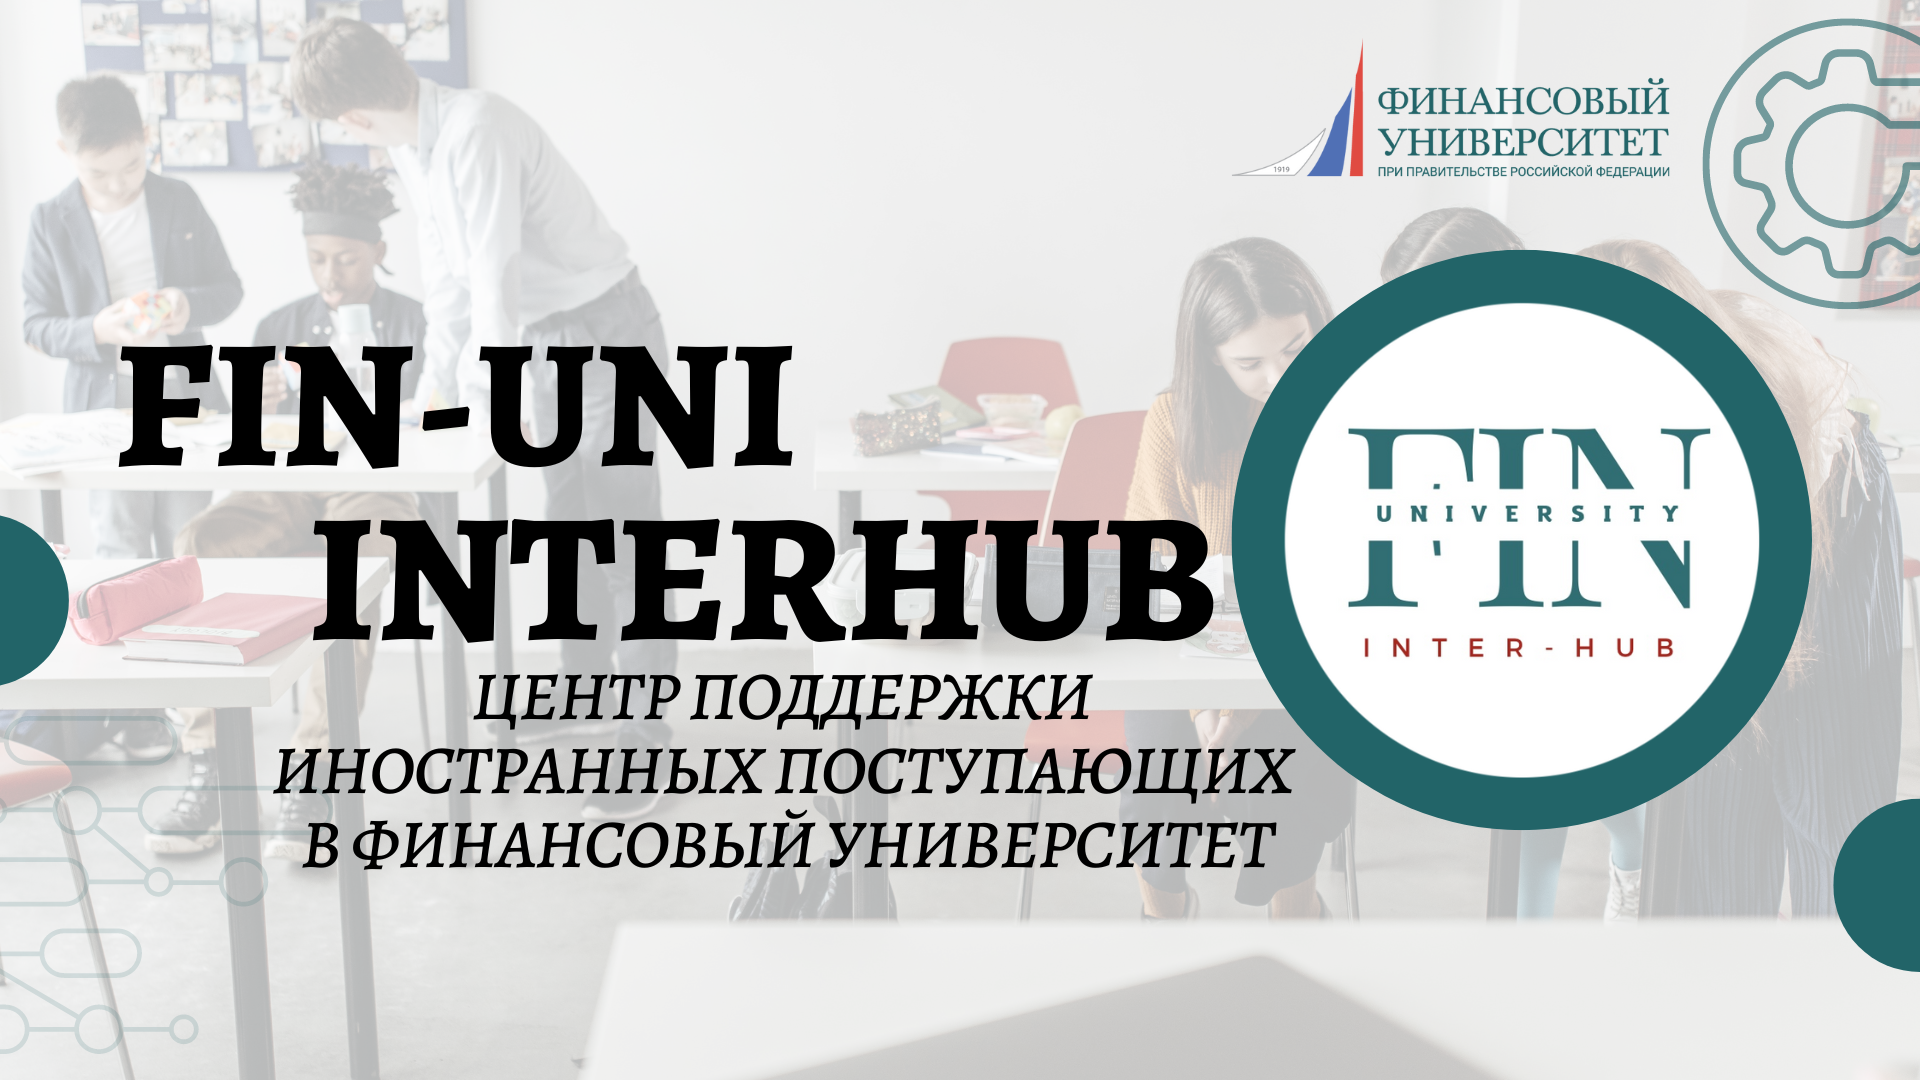 Открытие FIN-UNI InterHub